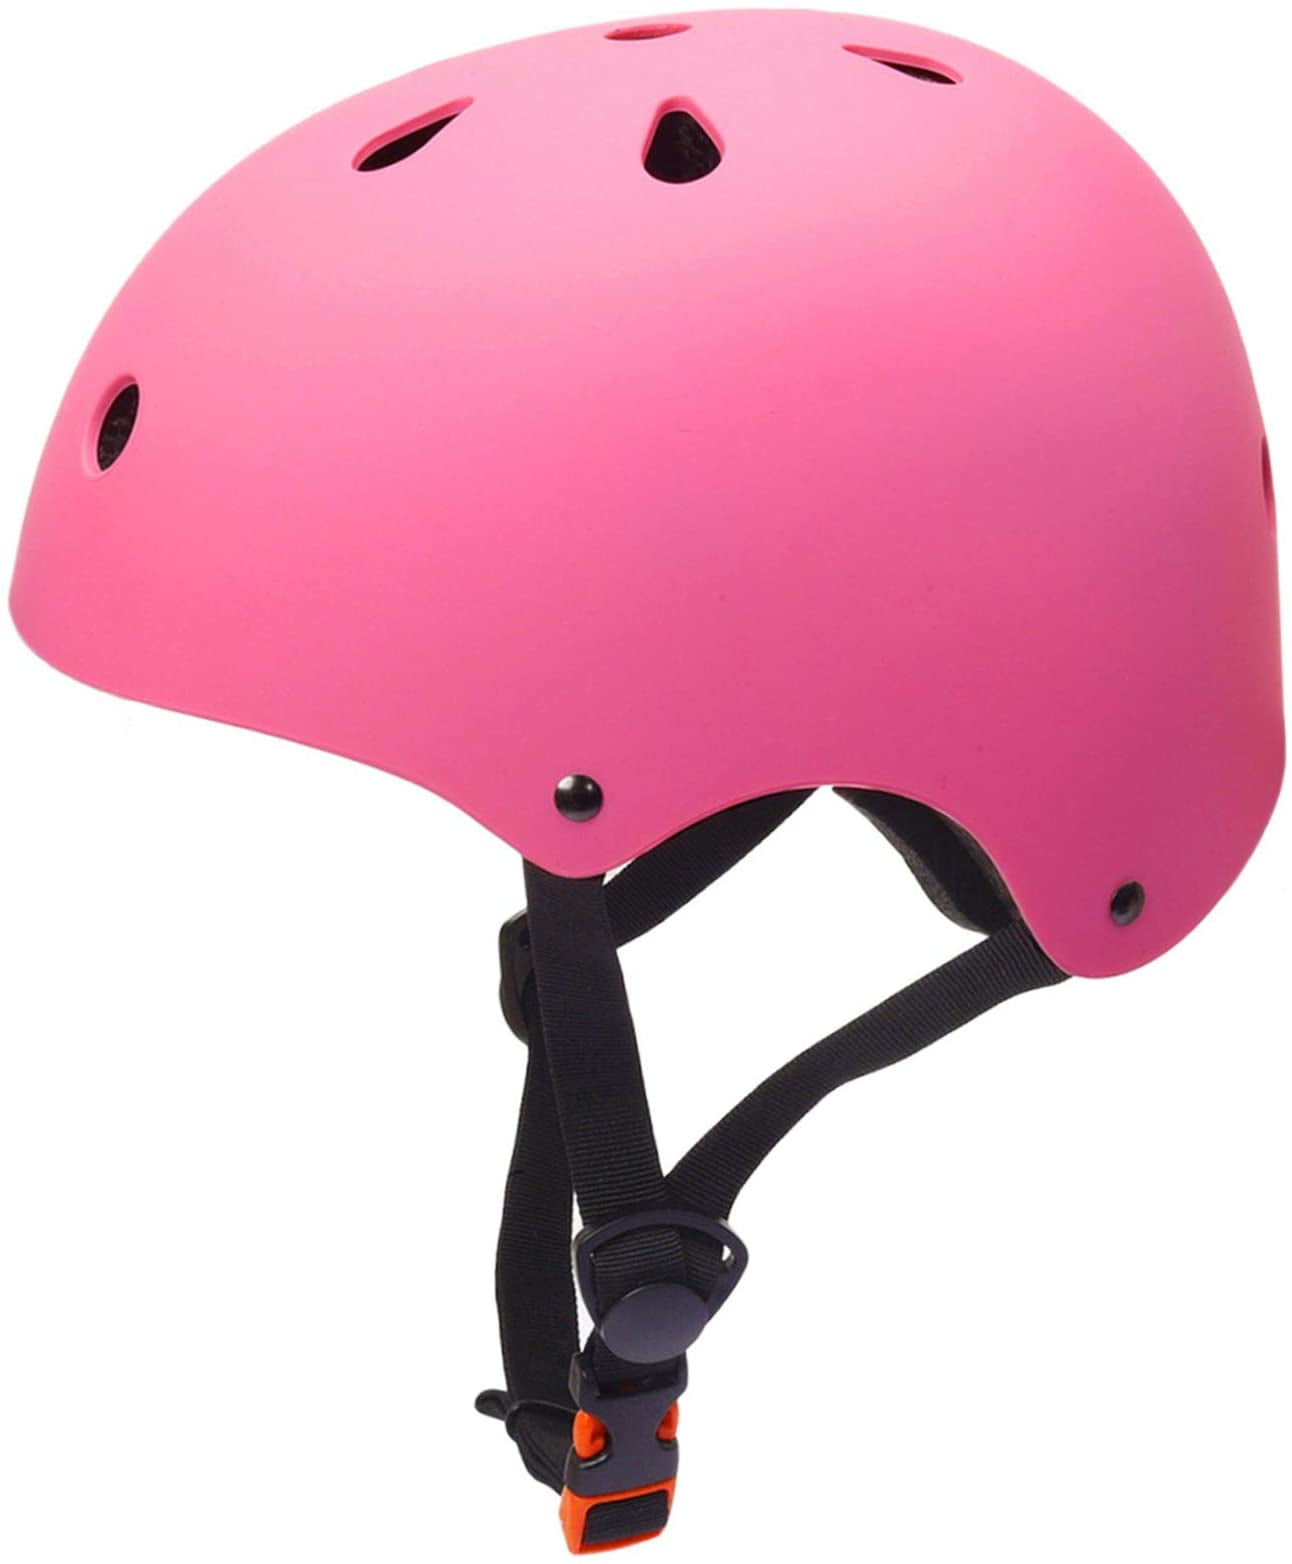 MTB Carbon Bicycle Cycling Helmet Adult Skate Bike Helmet for Men Women Youth